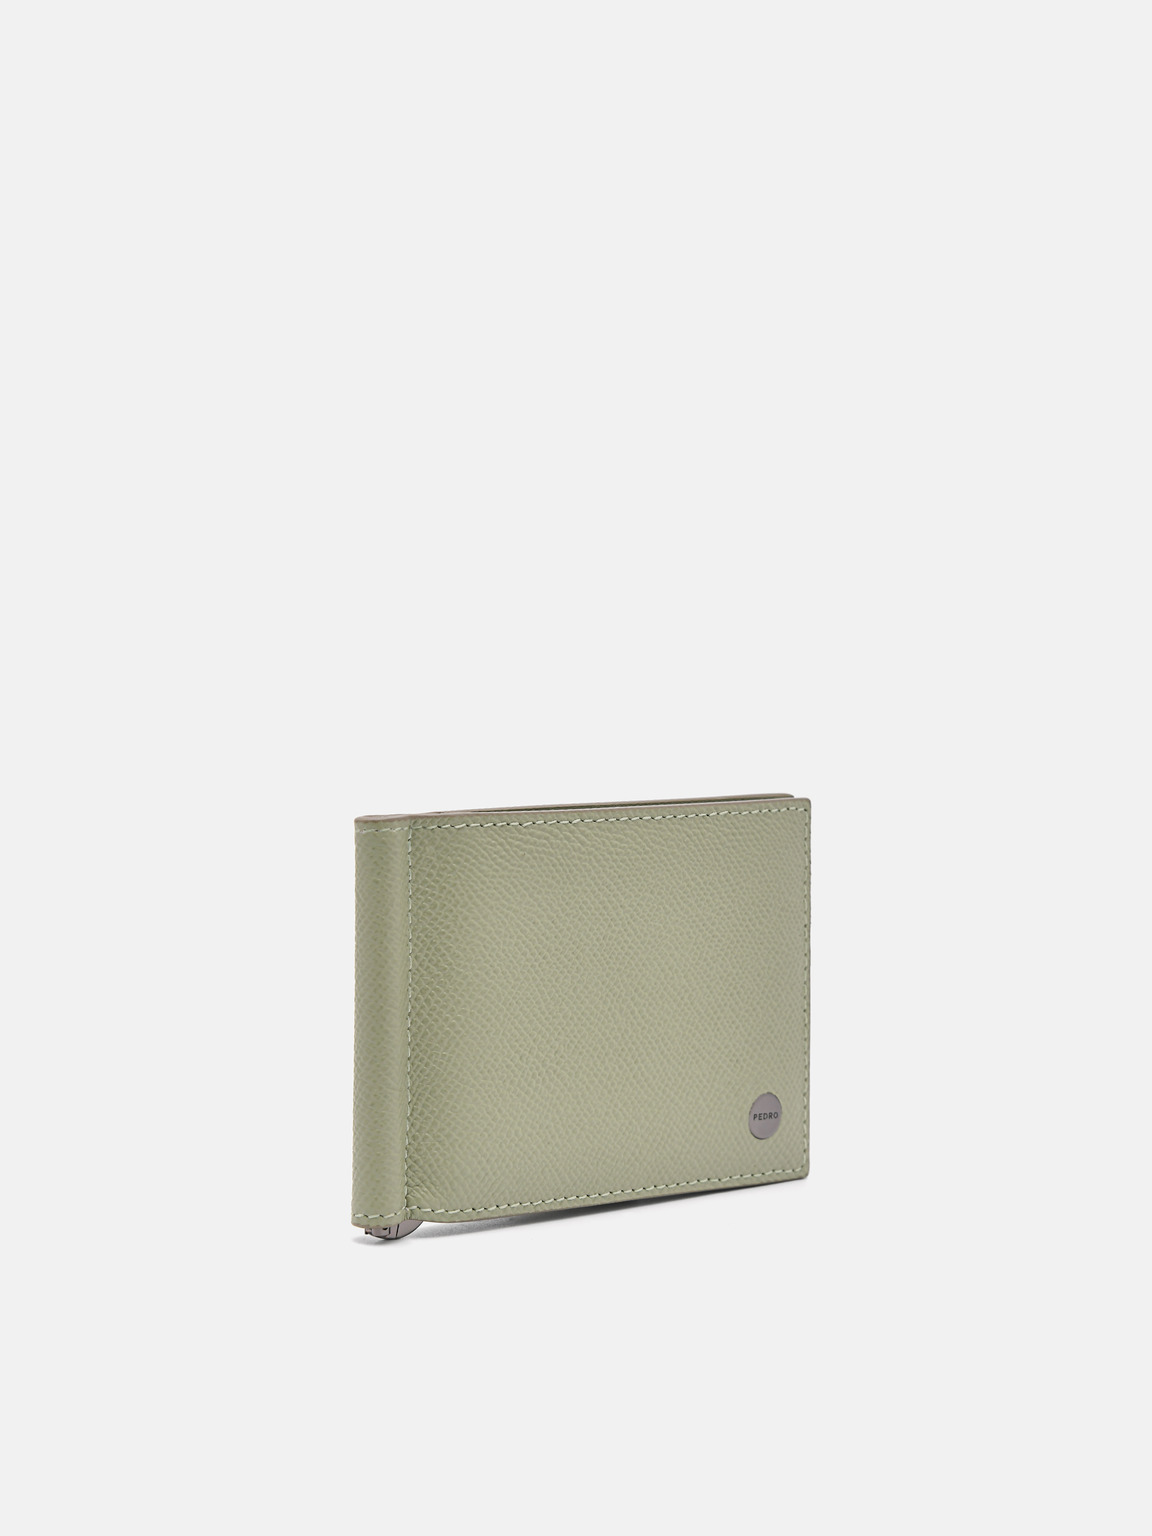 Oliver皮革雙折疊錢夾子卡包, 橄榄色